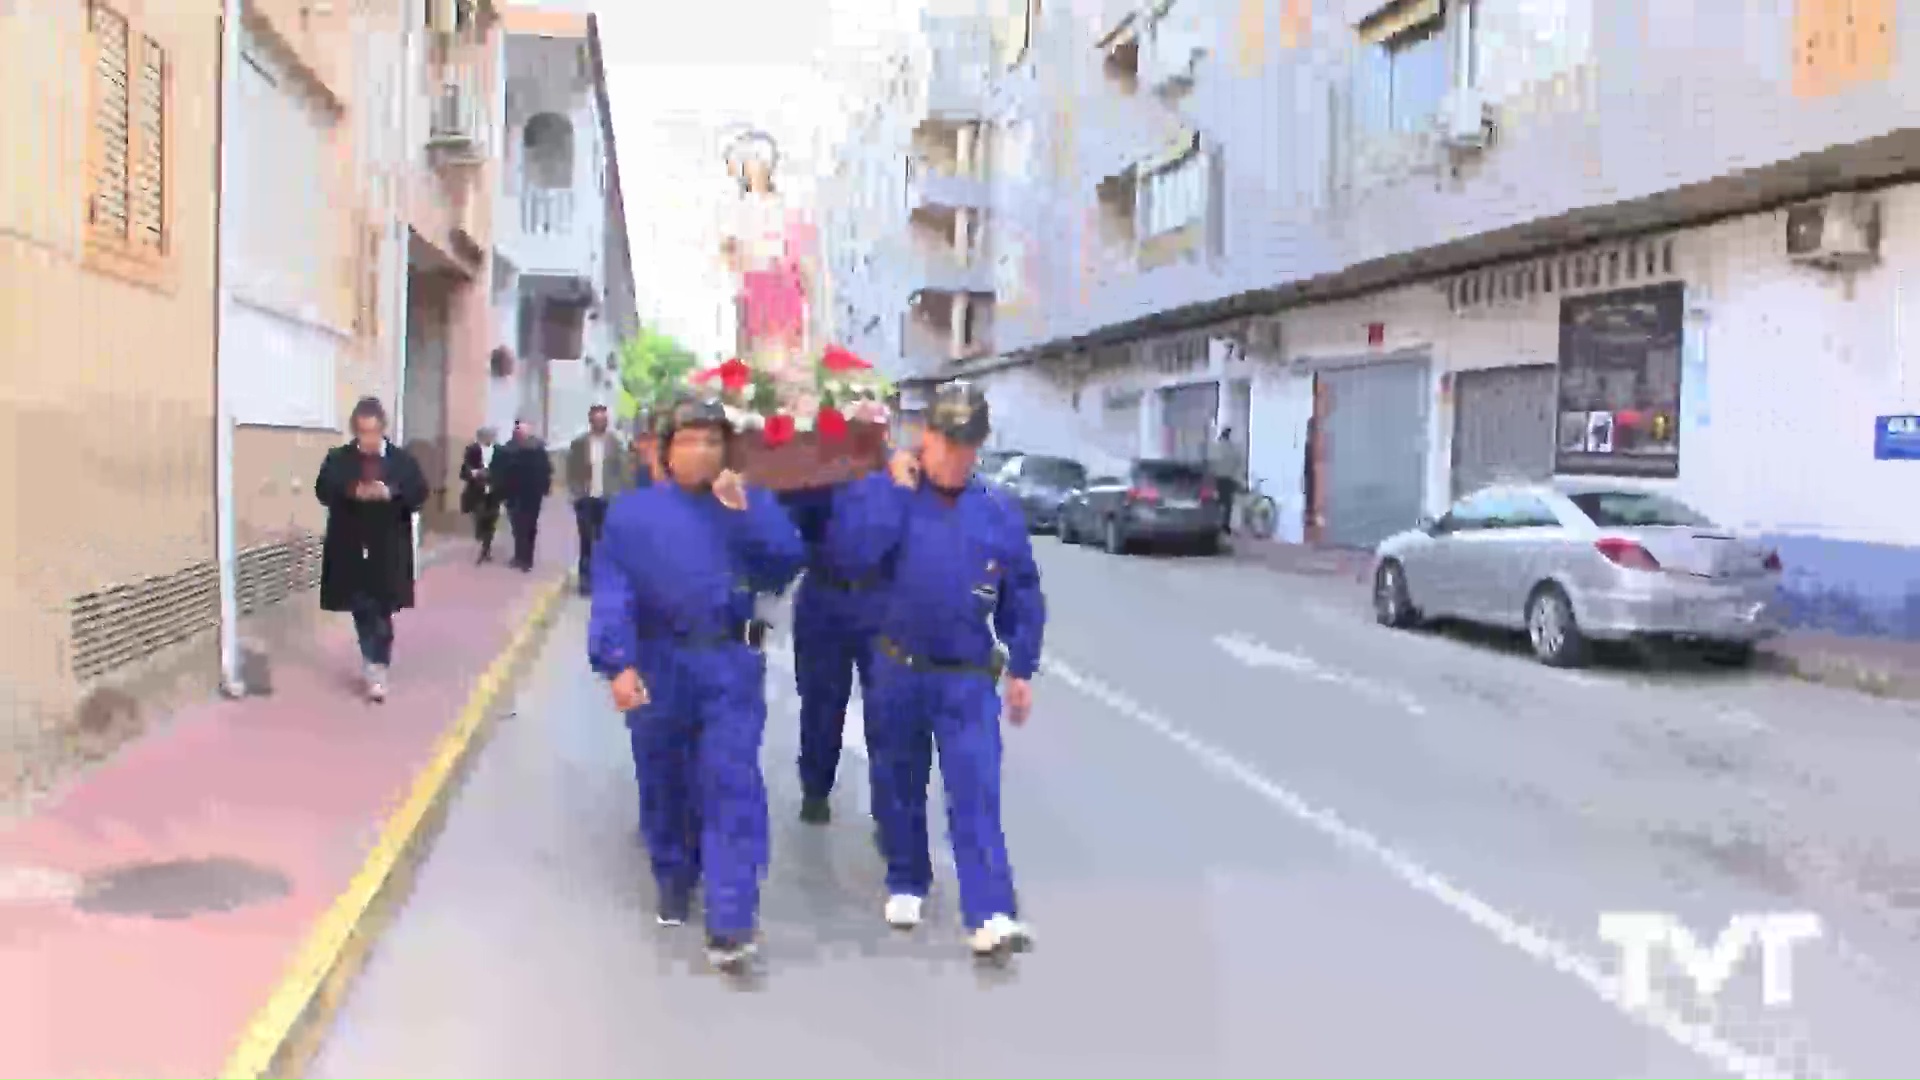 Imagen de Los asturianos celebran en Torrevieja una procesión en honor a Santa Bárbara